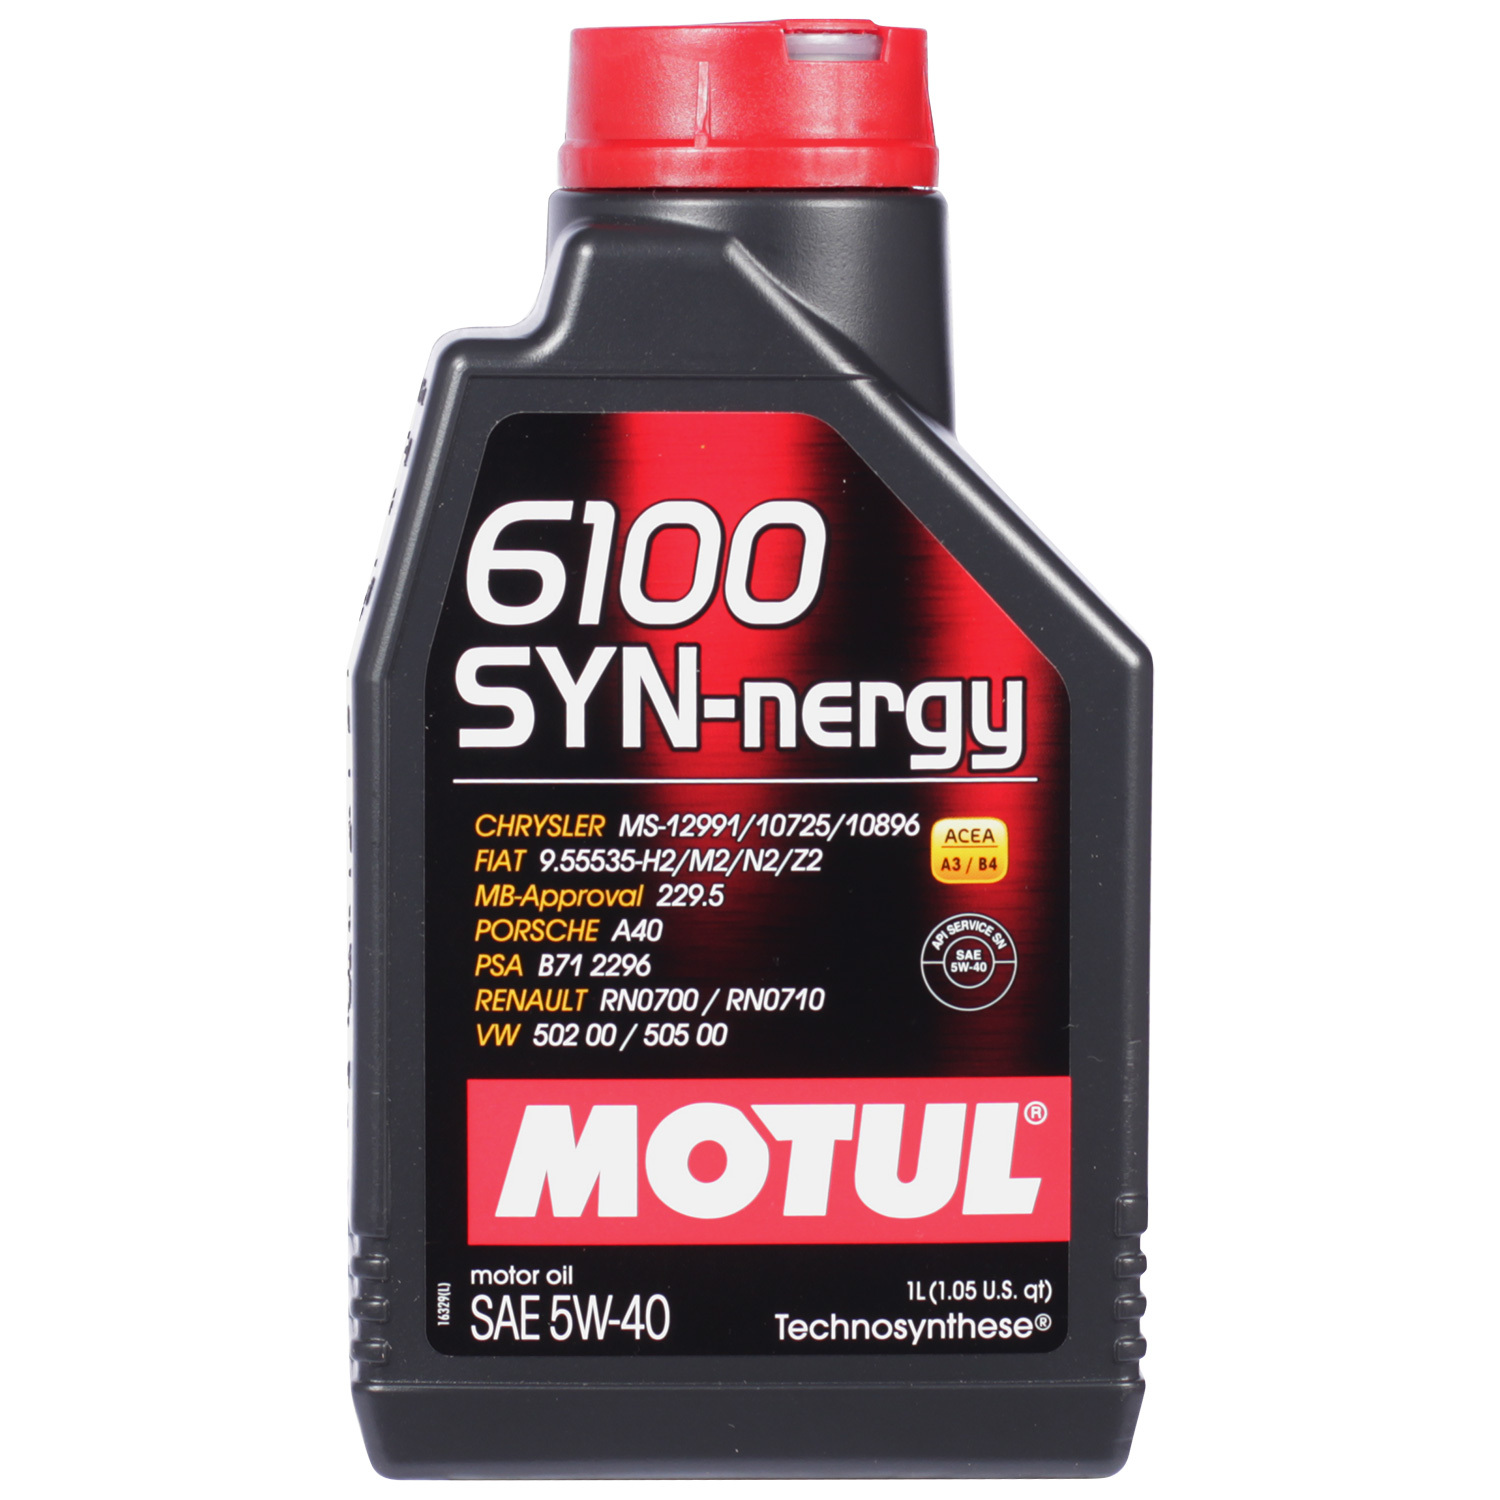 Motul Моторное масло Motul 6100 SYN-NERGY 5W-40, 1 л motul моторное масло motul 8100 eco nergy 5w 30 1 л